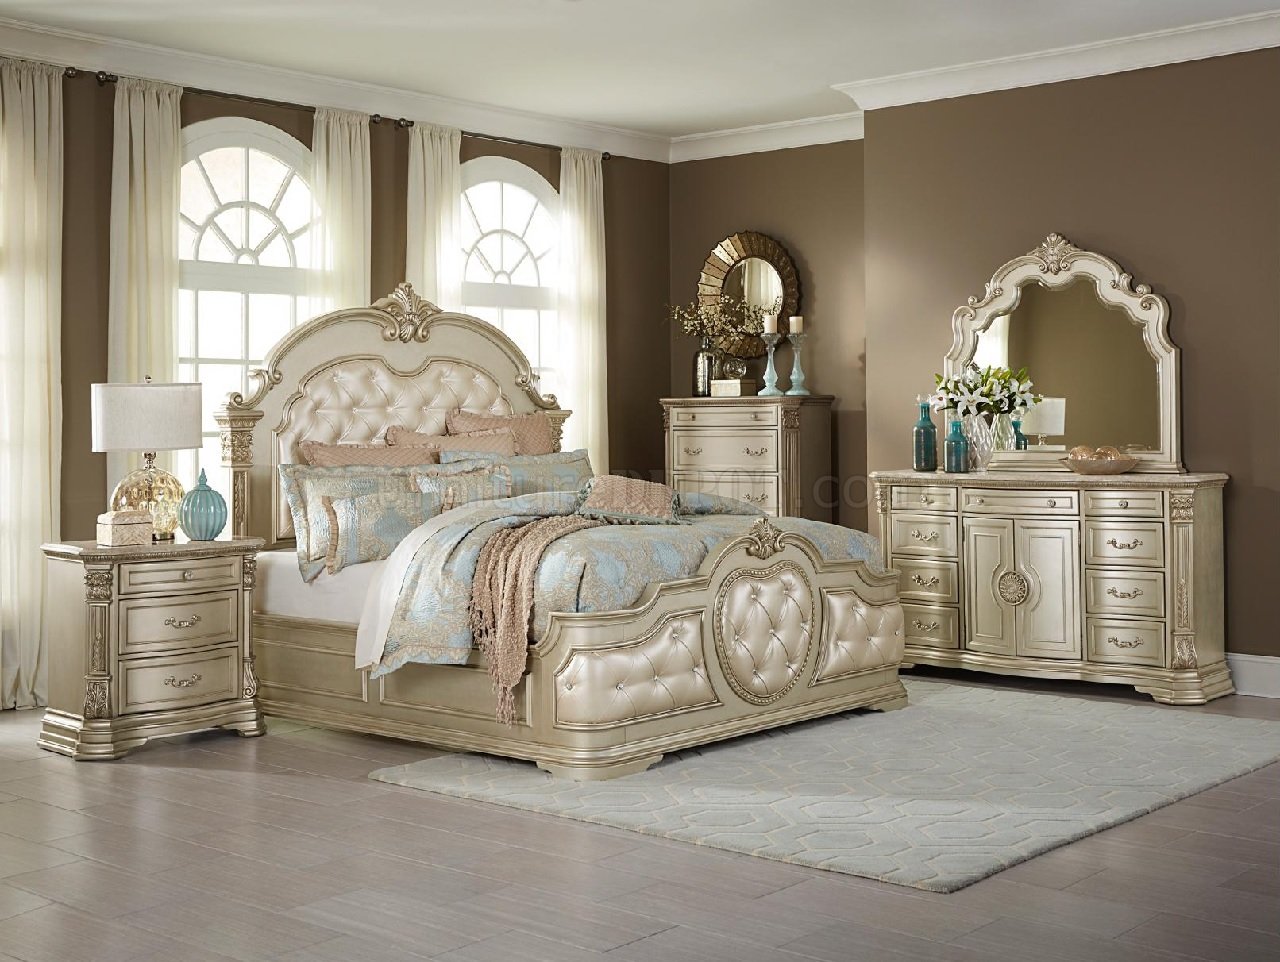 deseret industries queen bedroom furniture